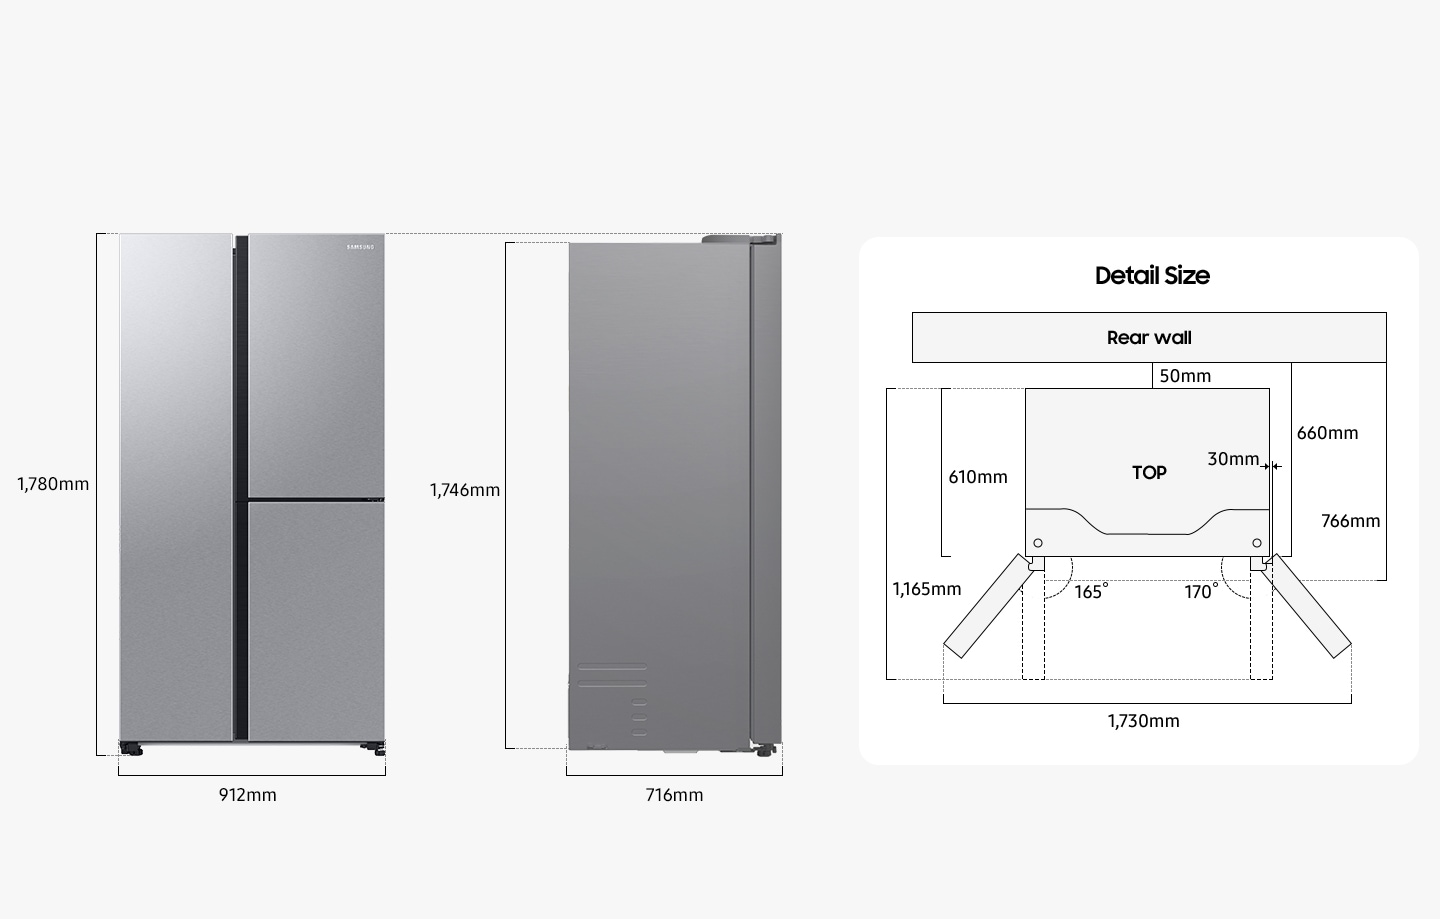 Der RS8000C ist inklusive Scharnier 178 cm hoch, 912 mm breit, 716 mm tief inklusive Griff und 176 cm hoch ohne Tür von hinten. Die Tiefe einschließlich des Raums zwischen dem Kühlschrank und der Rückwand und dem Kühlschrankkorpus beträgt 660 mm, und die Tiefe einschließlich des Raums zwischen dem Kühlschrank und der Rückwand sowie dem Kühlschrankkorpus und der Kühlschranktür beträgt 766 mm. Die Tiefe des installierten Kühlschranks ohne geschlossene Tür beträgt 610 mm. Die linke Tür kann maximal 165 Grad nach links geöffnet werden, die rechte Tür maximal 170 Grad nach rechts. Wenn beide Türen maximal geöffnet sind, beträgt die Gesamtbreite 1.730 mm. Wenn beide Türen um 90 Grad geöffnet sind, beträgt die Gesamttiefe 116,5 cm und die Kühlschranktür ragt 30 mm aus dem Kühlschrankkorpus heraus. Im eingebauten Zustand benötigt der RS8000C mehr als 50 mm Abstand zur Rückwand.